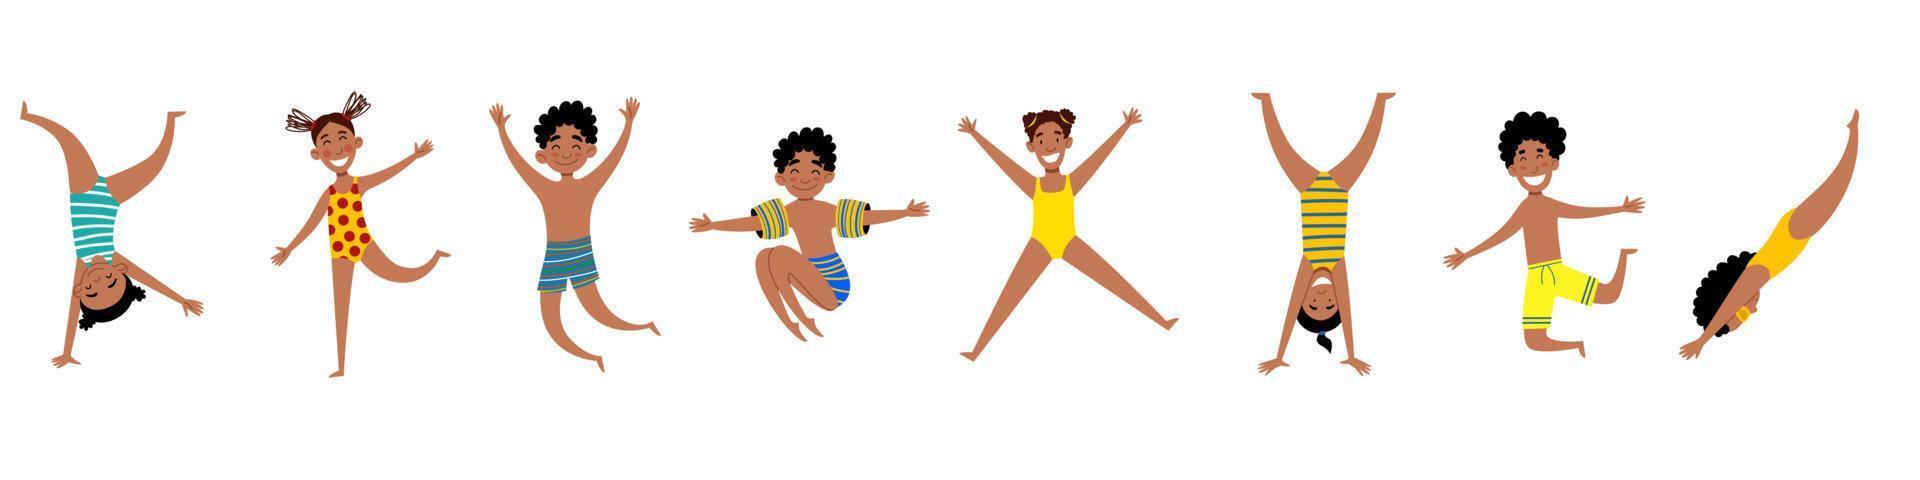 un ensemble d'enfants afro-américains heureux. filles et garçons en maillot de bain. vecteur